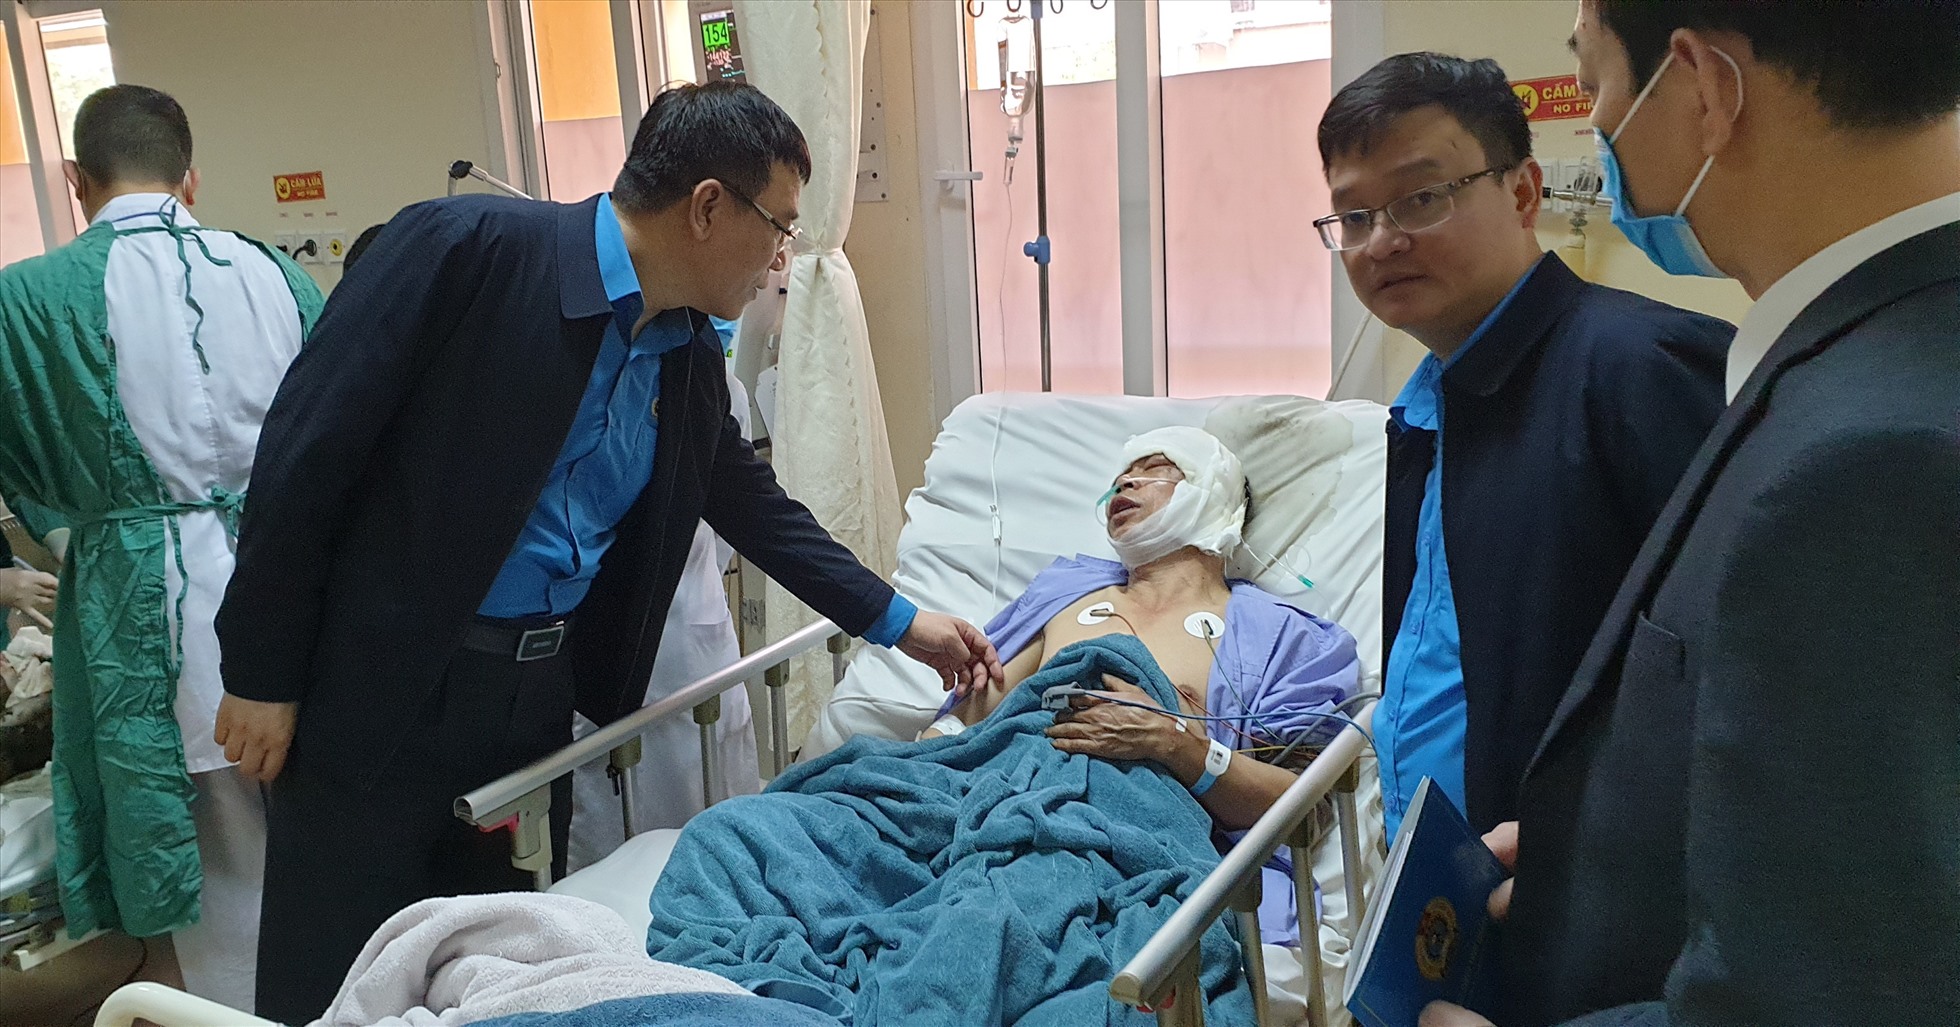 Ông Tô Xuân Thao (trái) - Chủ tịch LĐLĐ Quảng Ninh - đến thăm hỏi, trao tiền hỗ trợ cho công nhân bị tai nạn tại Bệnh viện Việt Nam - Thụy Điển Uông Bí, tỉnh Quảng Ninh. Ảnh: Nguyễn Hùng